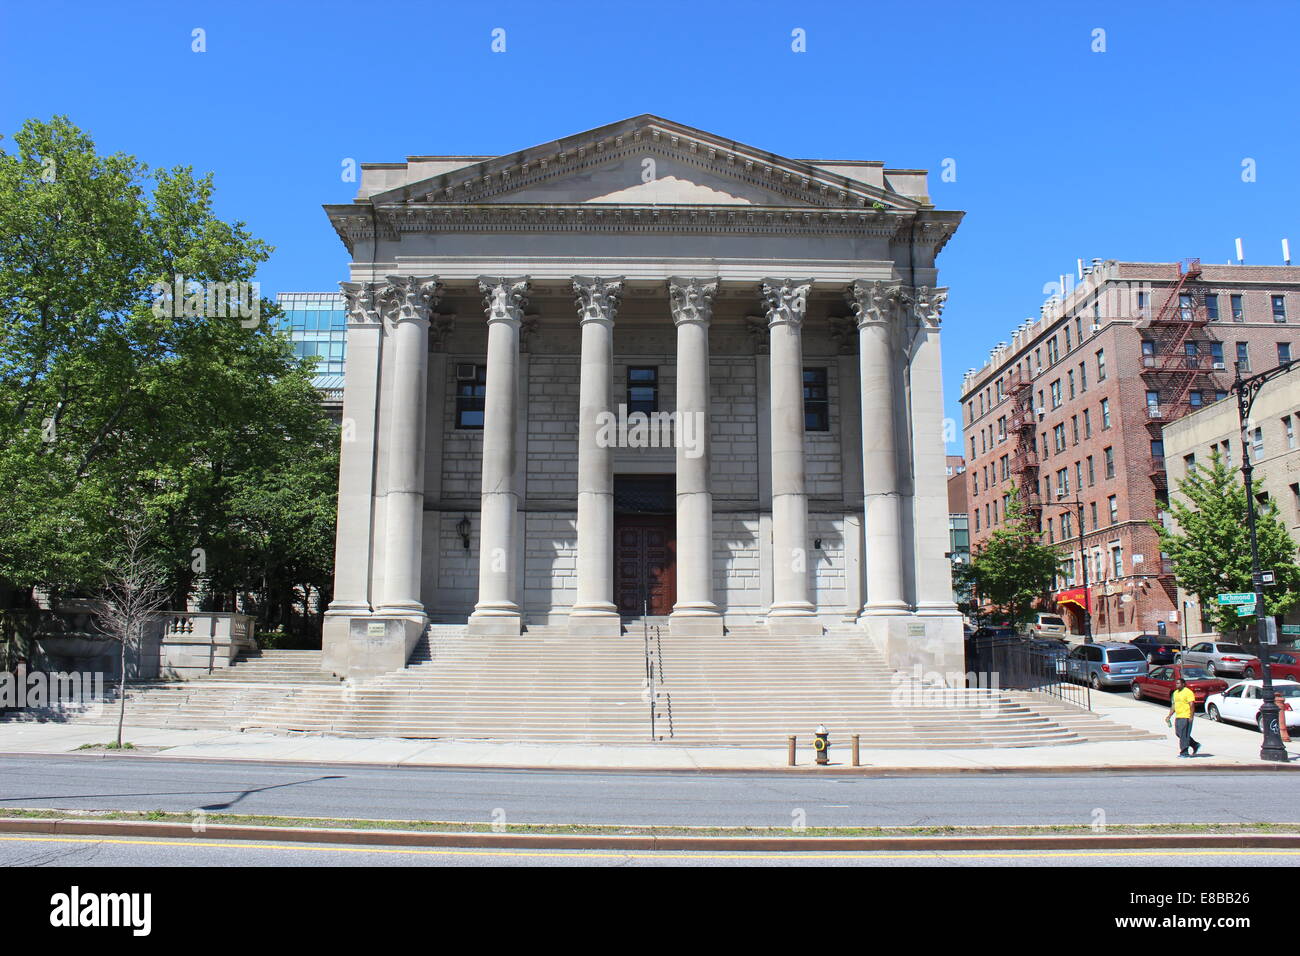 Palais de justice du comté de Richmond, Saint George, Staten Island, New York. Conçu par Carrère & Hastings. Construit en 1913-1919. Banque D'Images